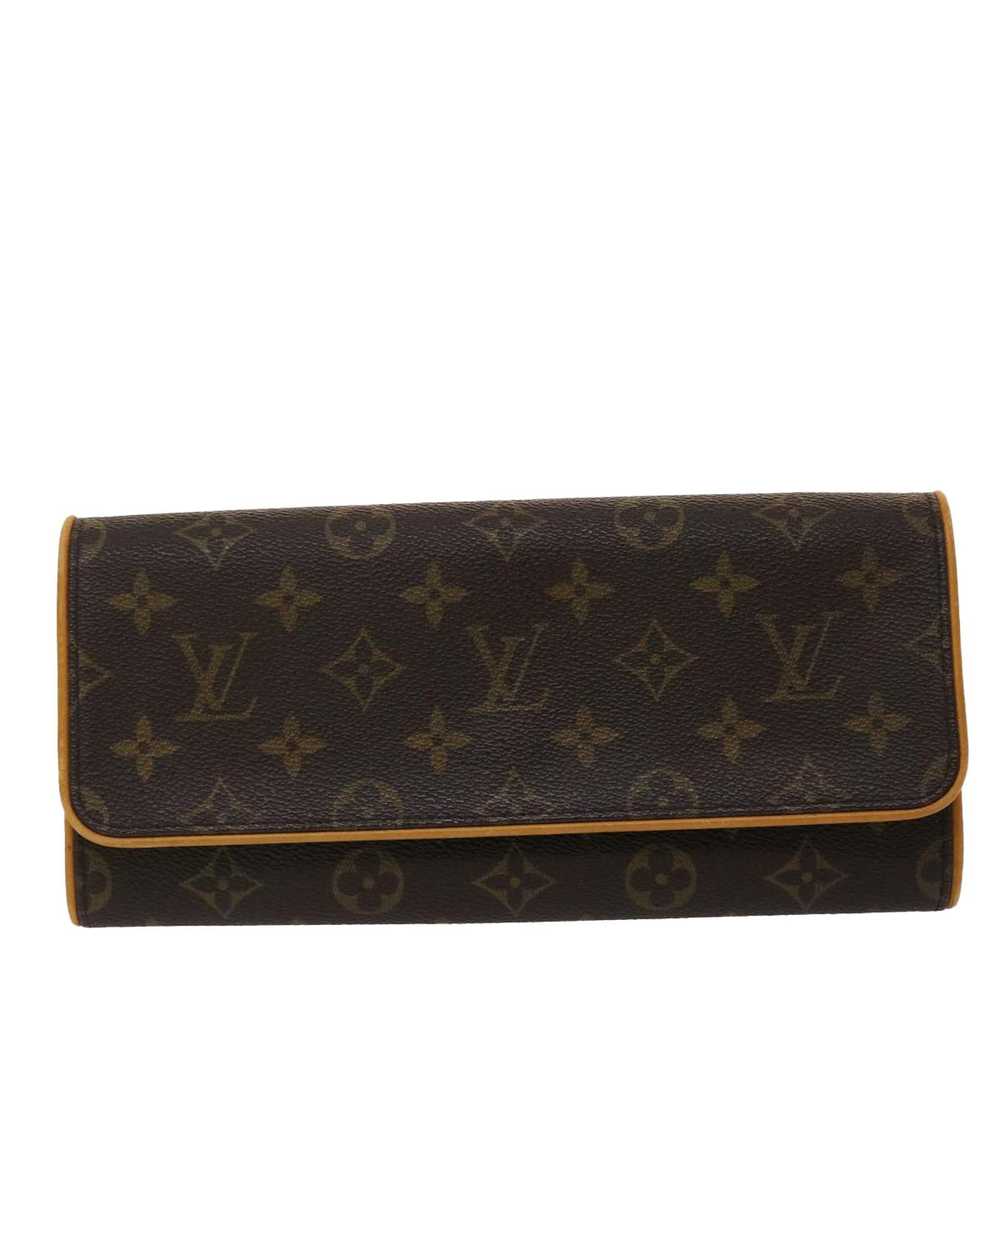 Louis Vuitton Louis Vuitton Twin Bag/Clutch - Coa… - image 2